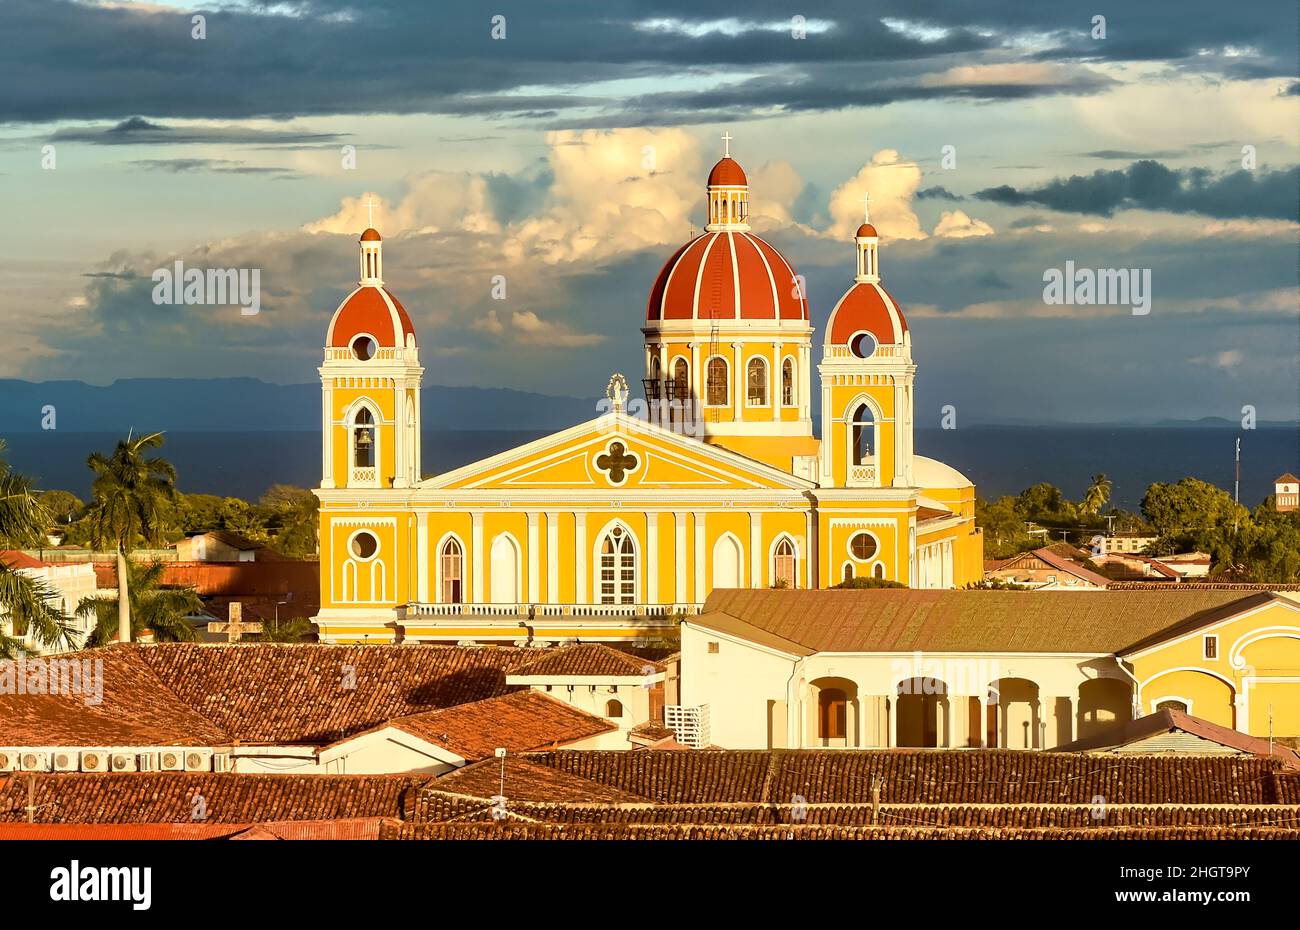 La belle cathédrale néoclassique de Grenade et les toits de Grenade coloniale, Nicaragua Banque D'Images